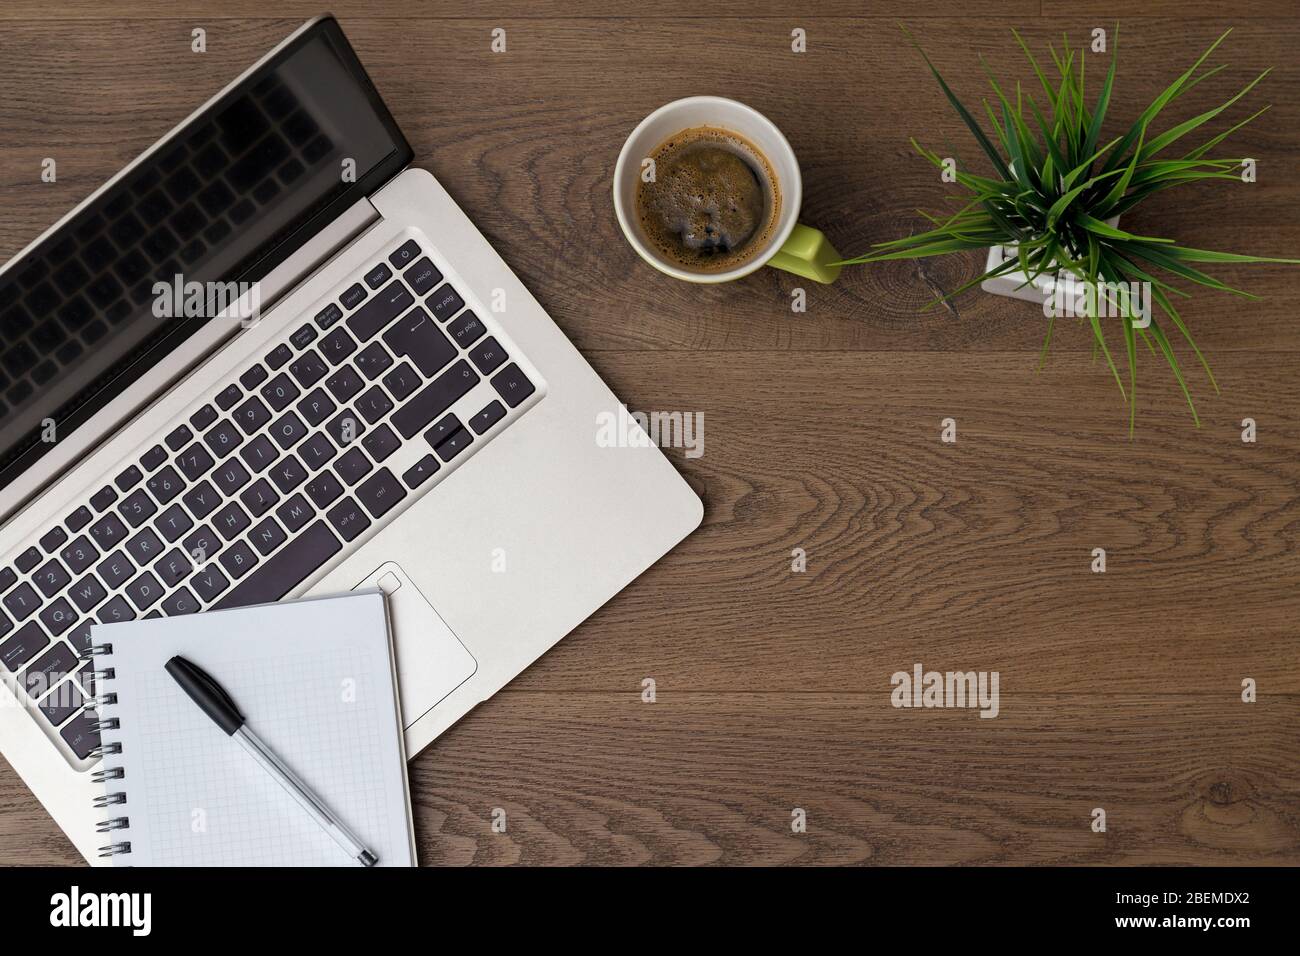 Ansicht von oben des Arbeitsbereichs. Tisch Schreibtisch mit Laptop, Kaffee, Notizblock, Stift und Pflanze mit Leerraum Hintergrund für Design. Flache Ansicht von dunkelbraunem Holz. Stockfoto